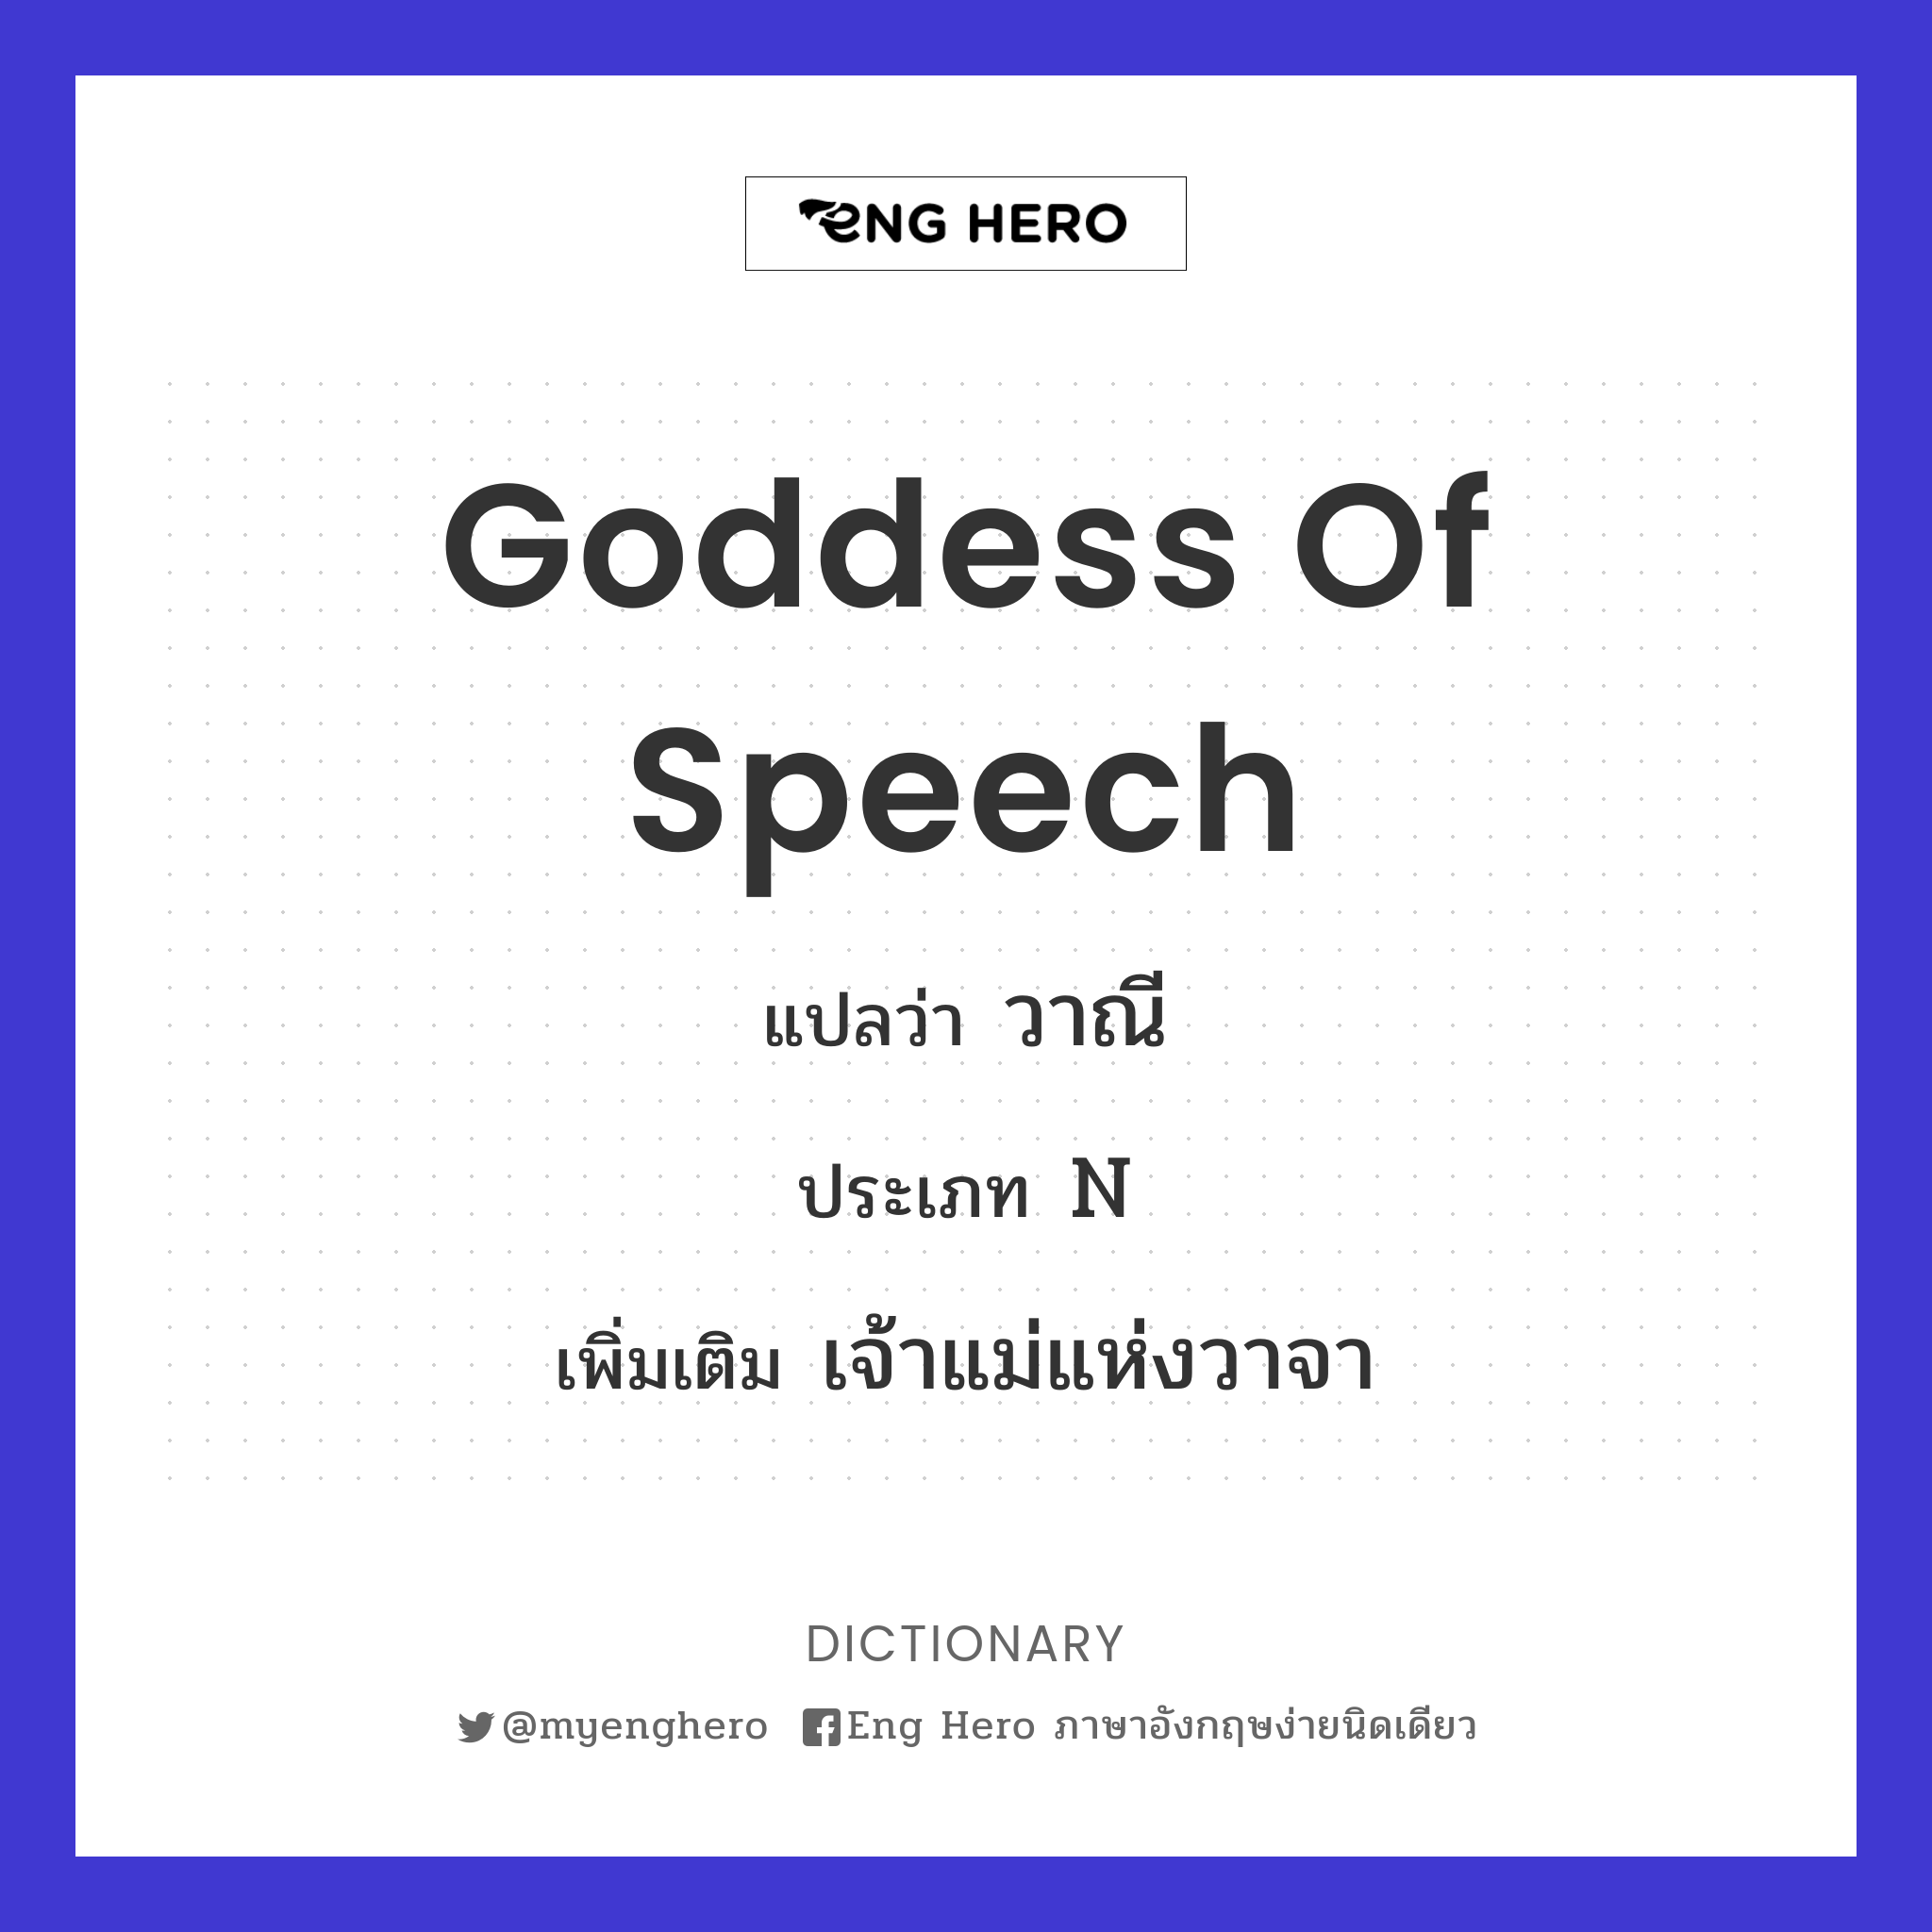 Goddess of Speech